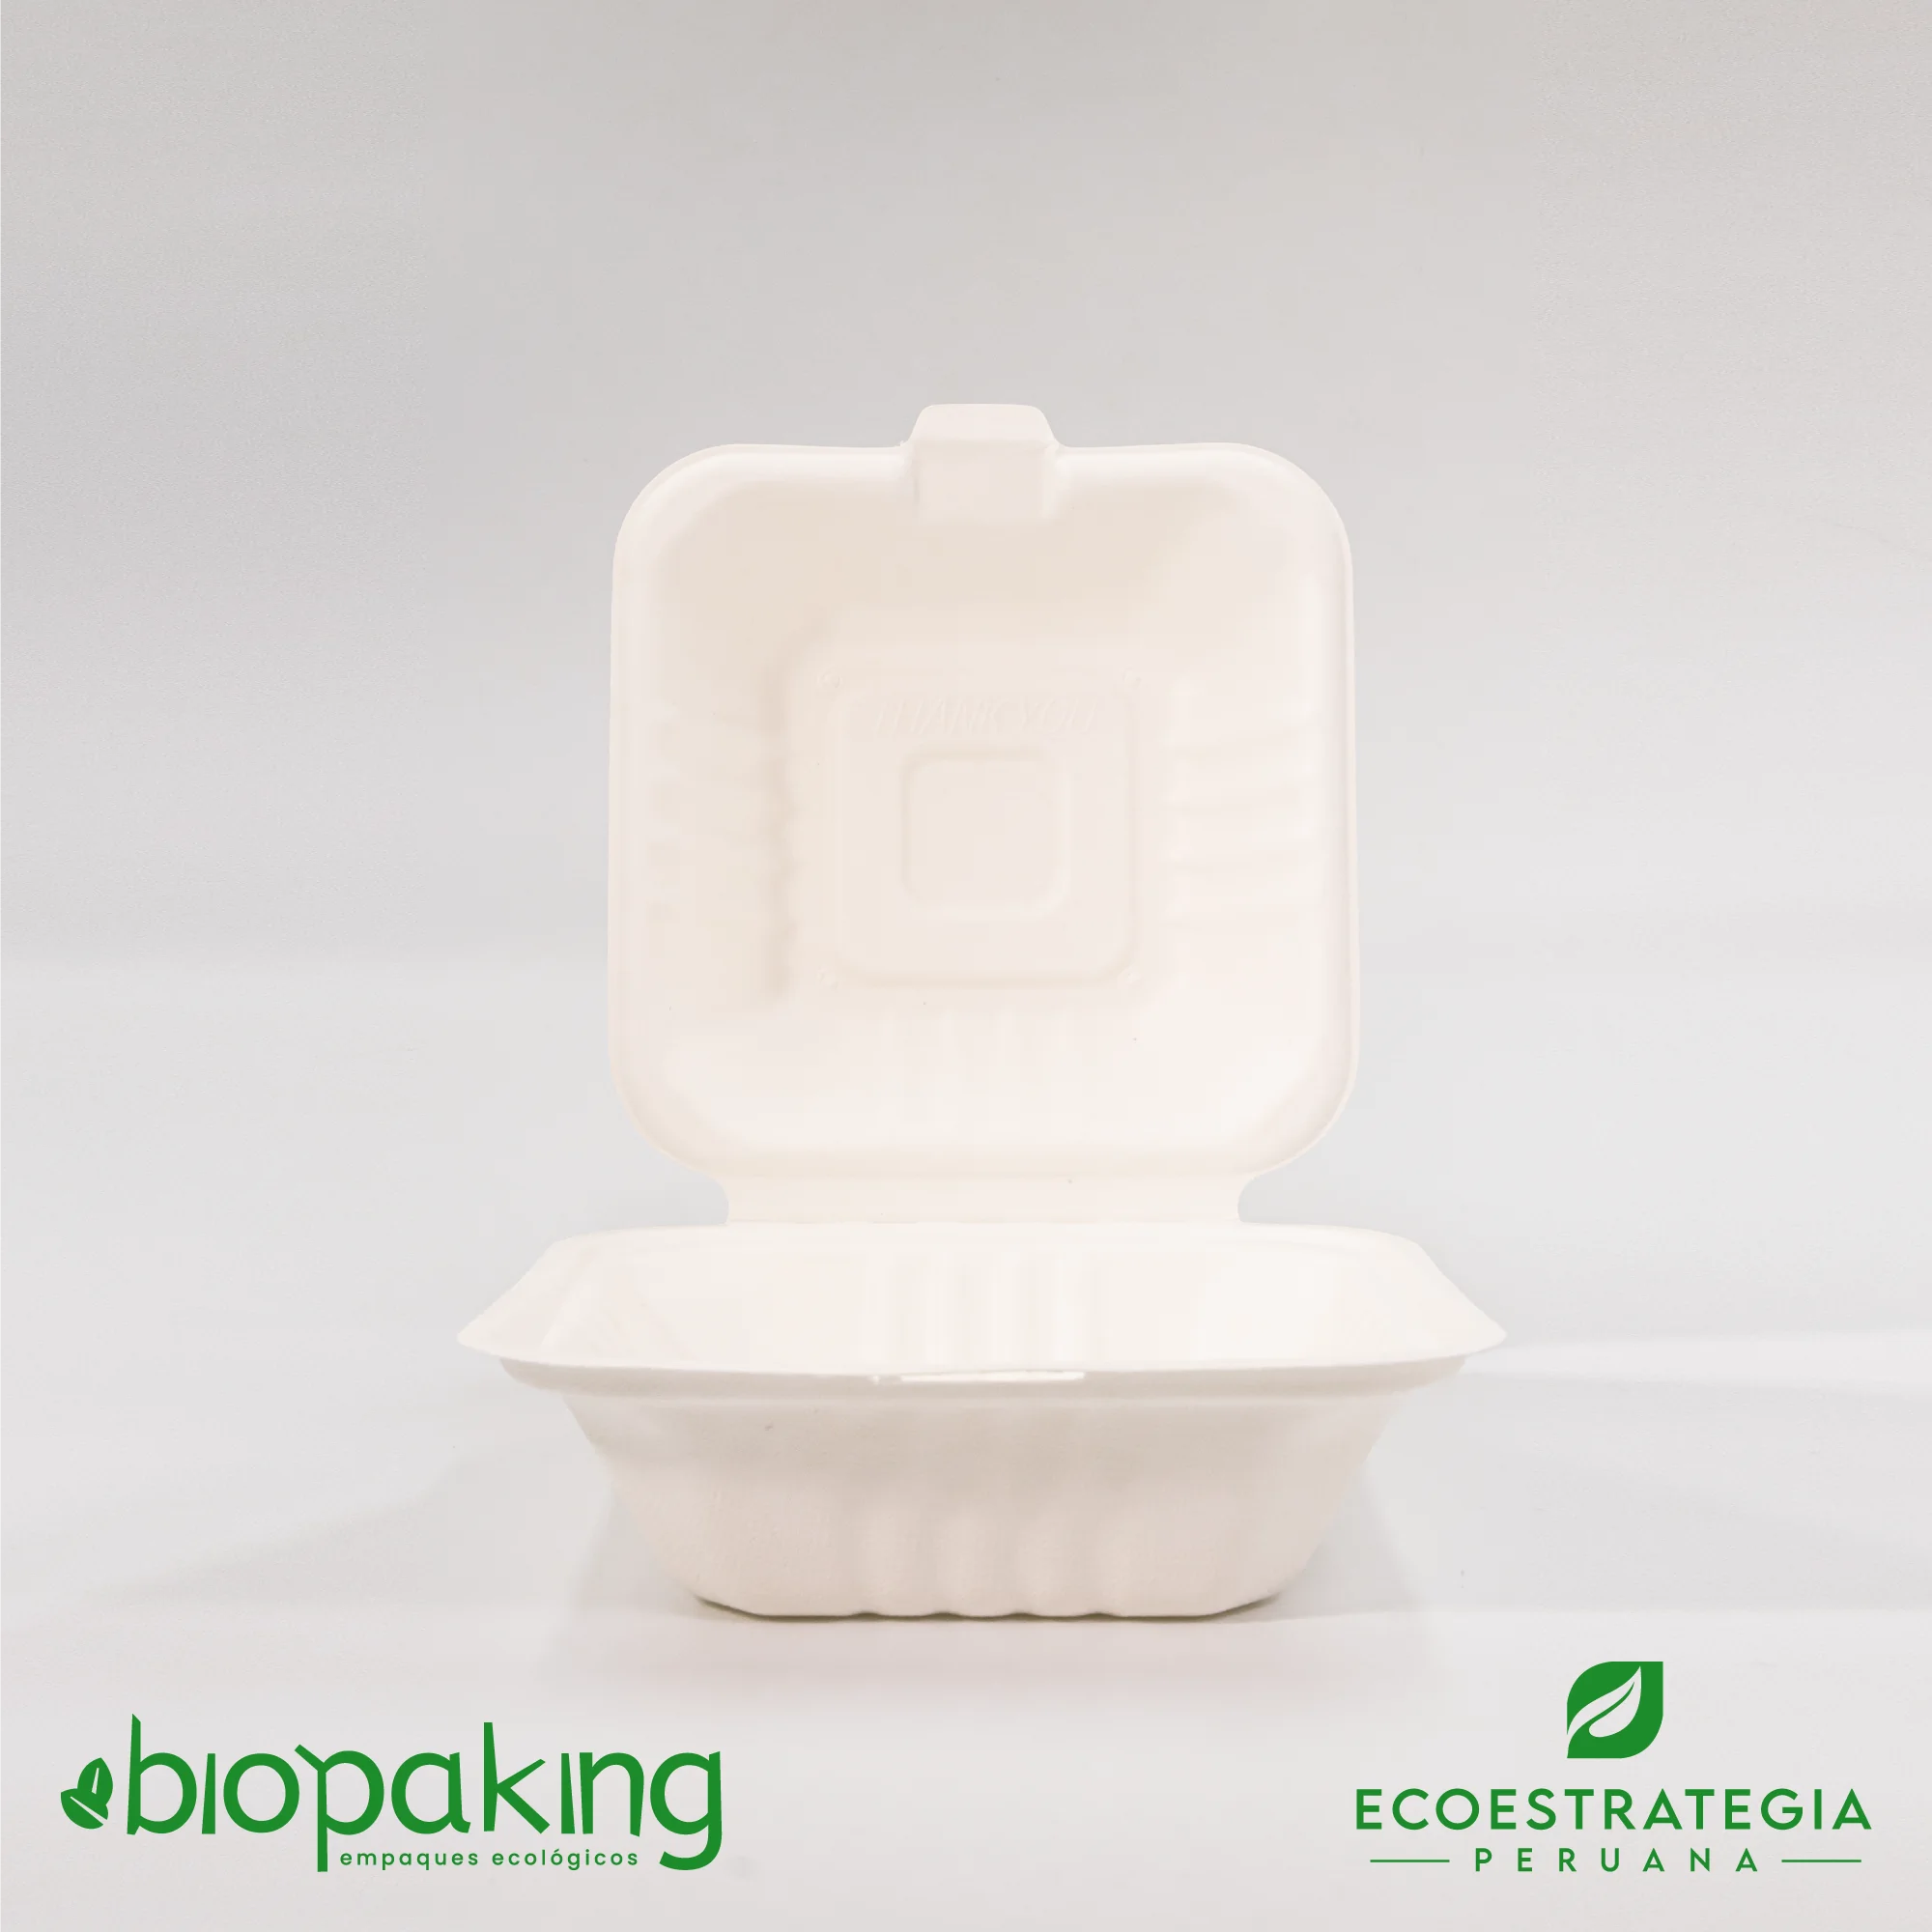 Este envase biodegradable CT4 pequeño tiene una capacidad de 480ml. Táper biodegradable a base del bagazo de fibra de caña de azúcar, empaques de gramaje ideal para comidas frías y calientes